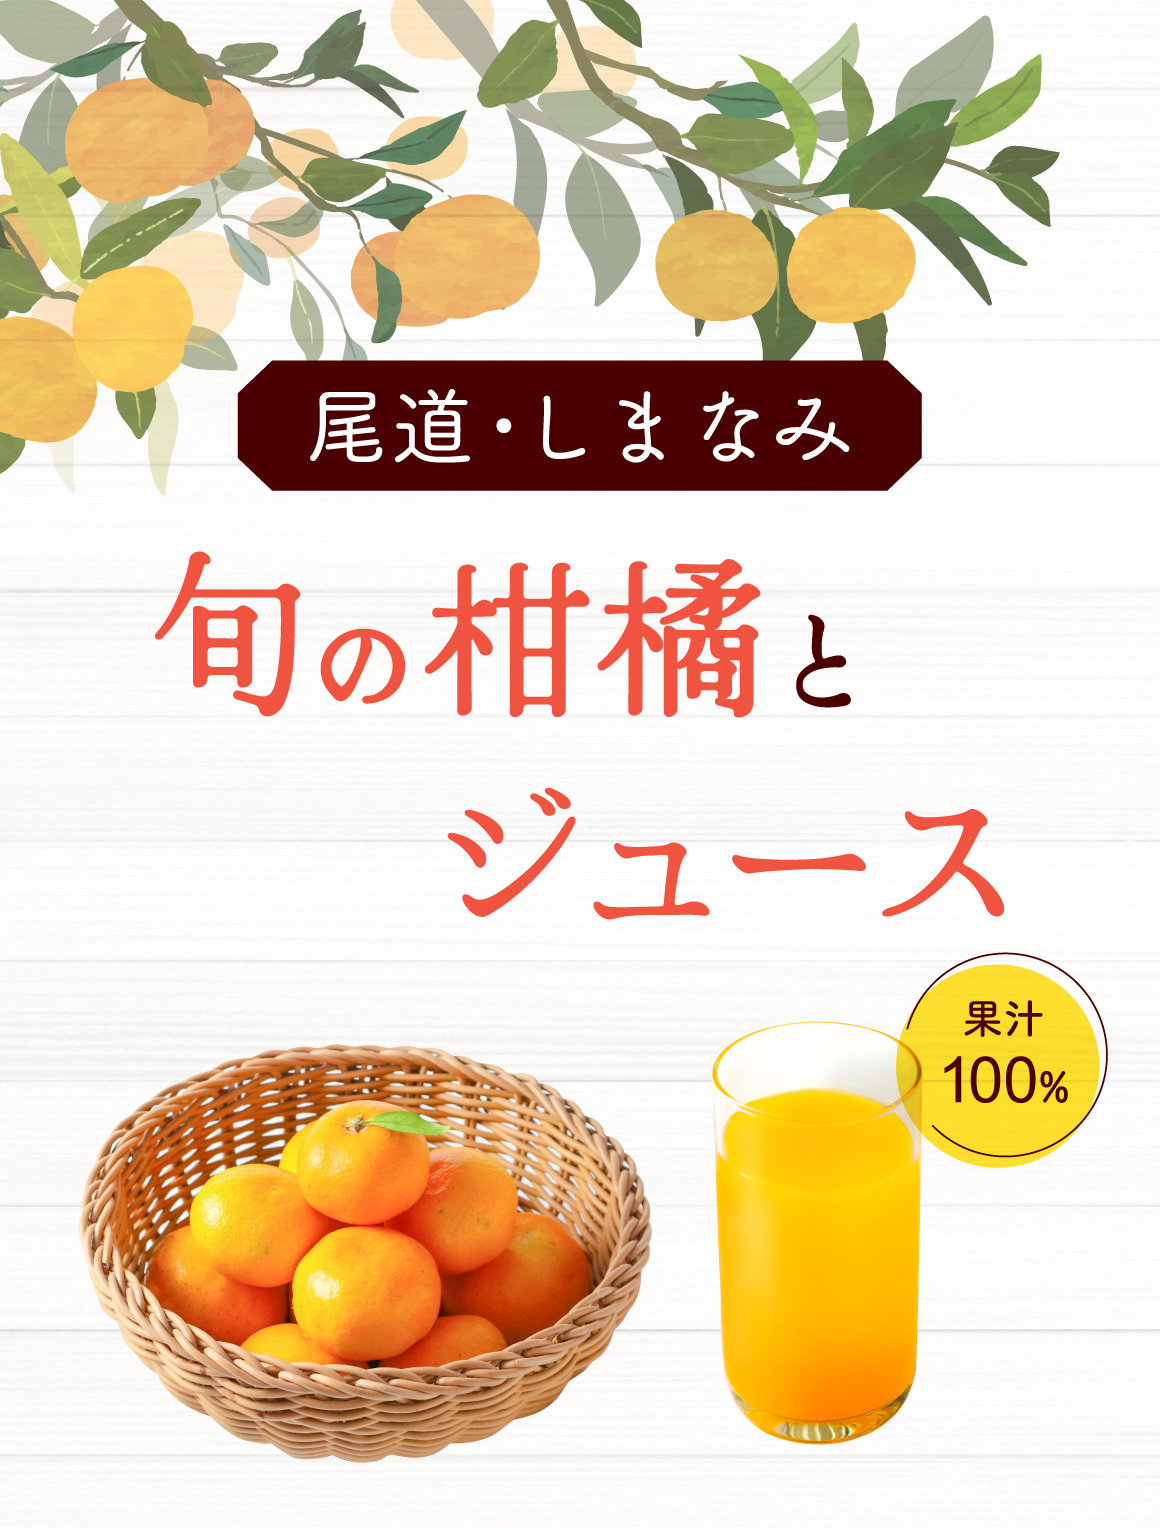 尾道・しまなみ 旬の柑橘とジュース 果汁100%